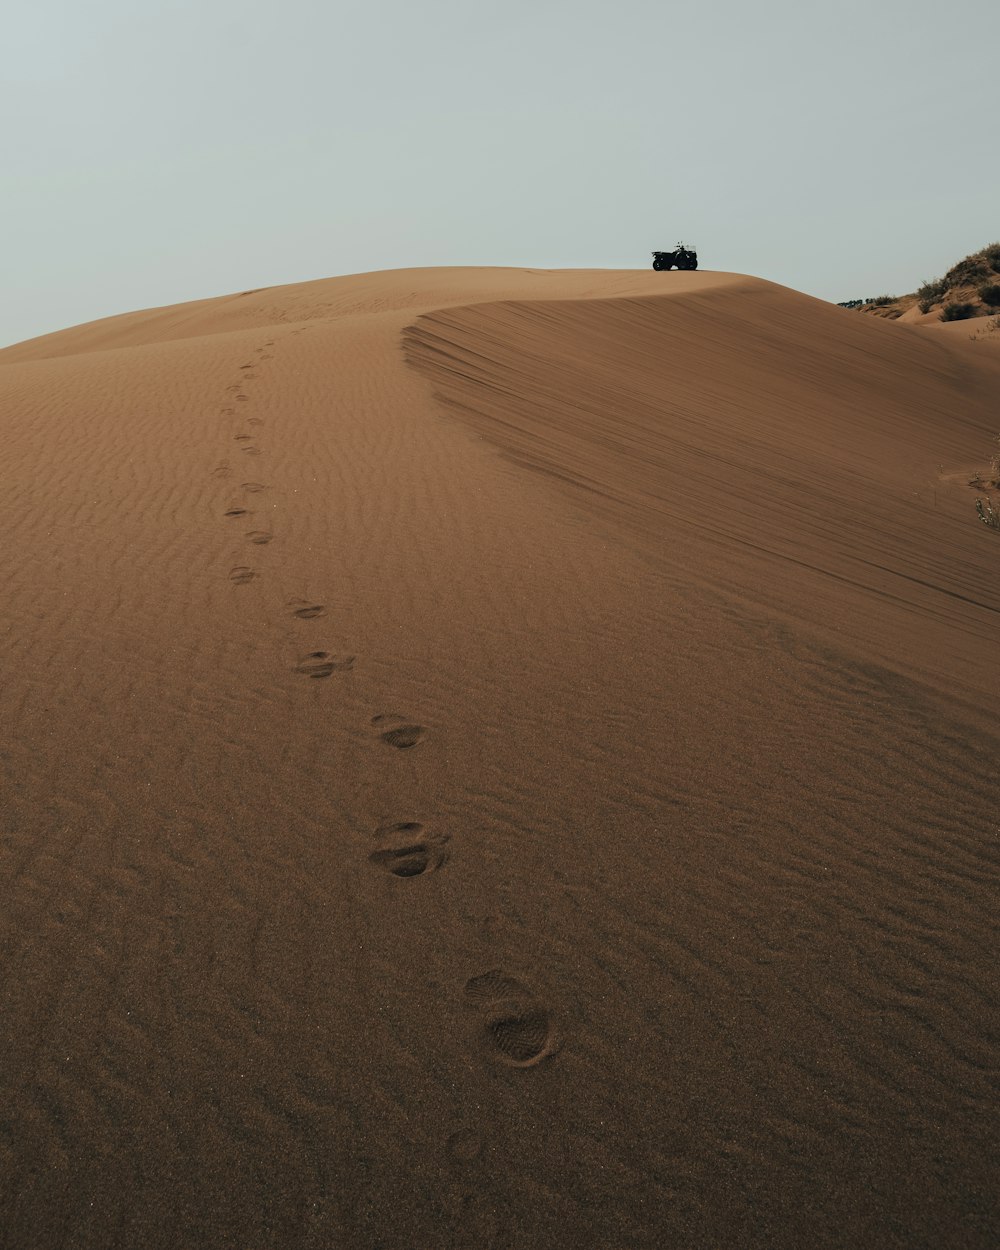 Une jeep descendant une colline de sable avec des empreintes de pas dans le sable